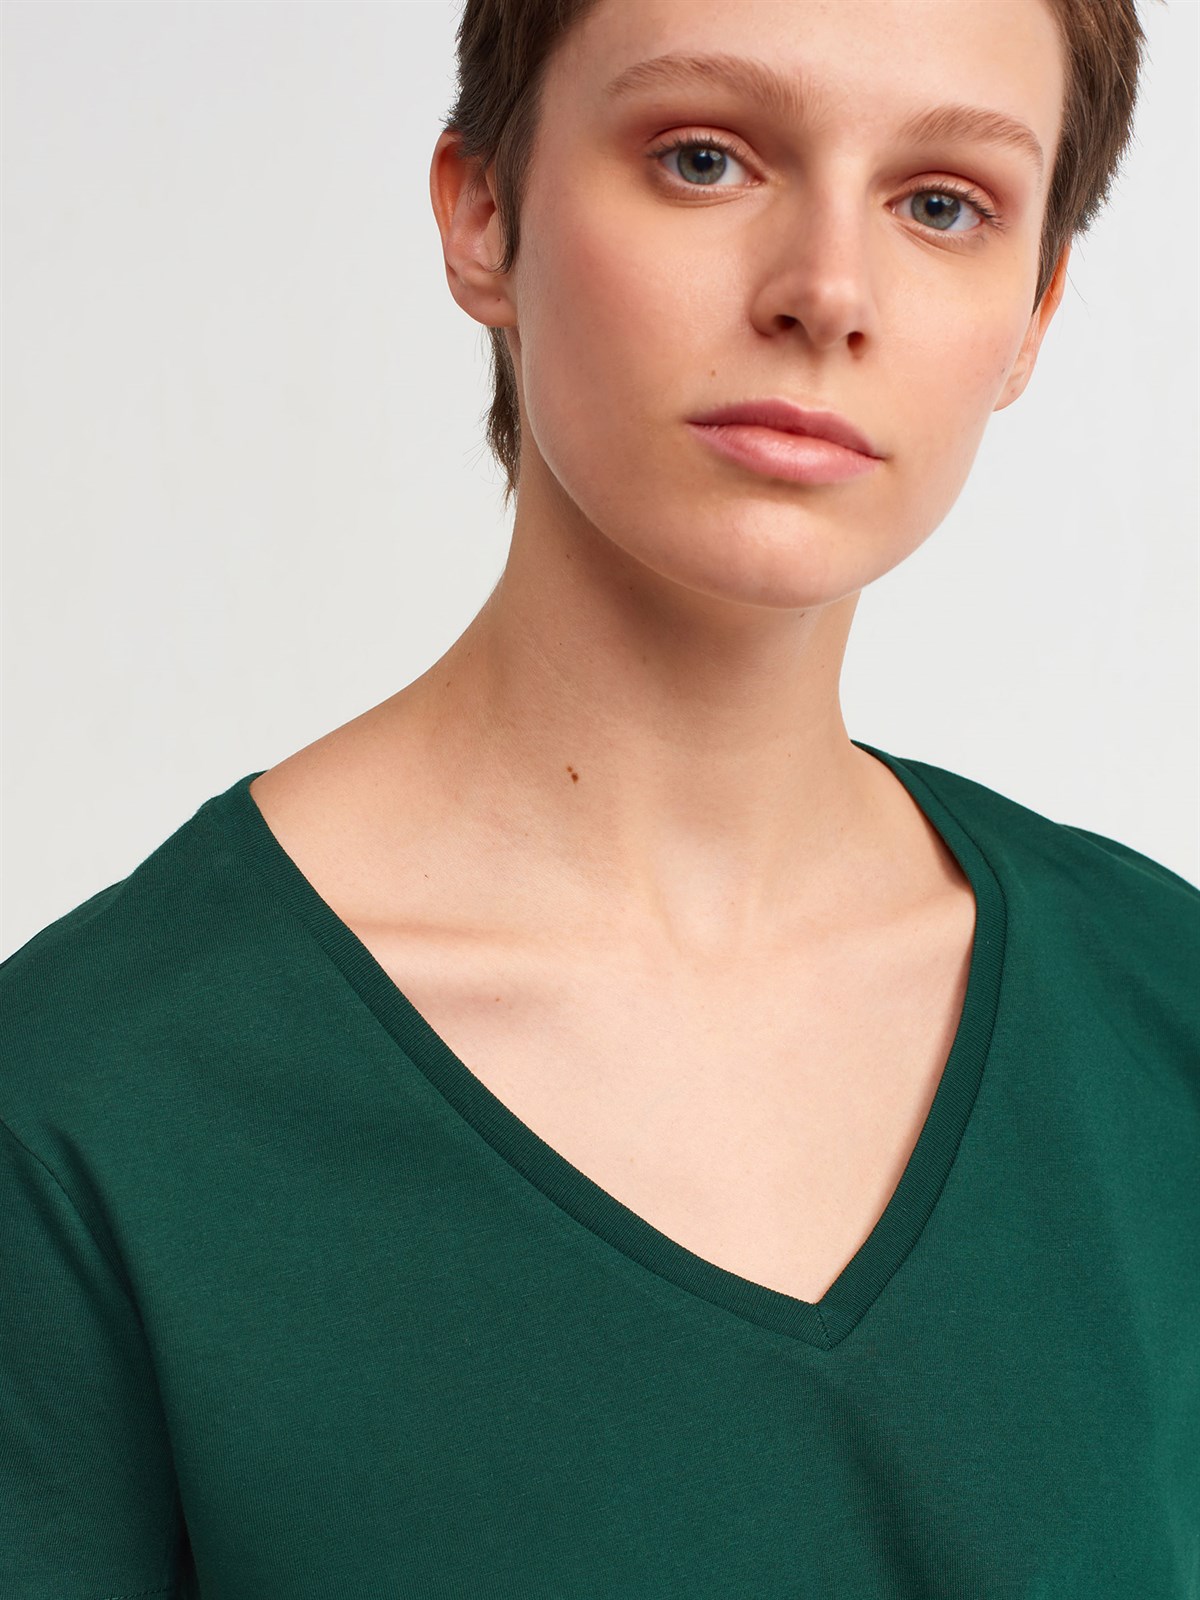 Kadın Yeşil V Yaka Basic Tişört 3470